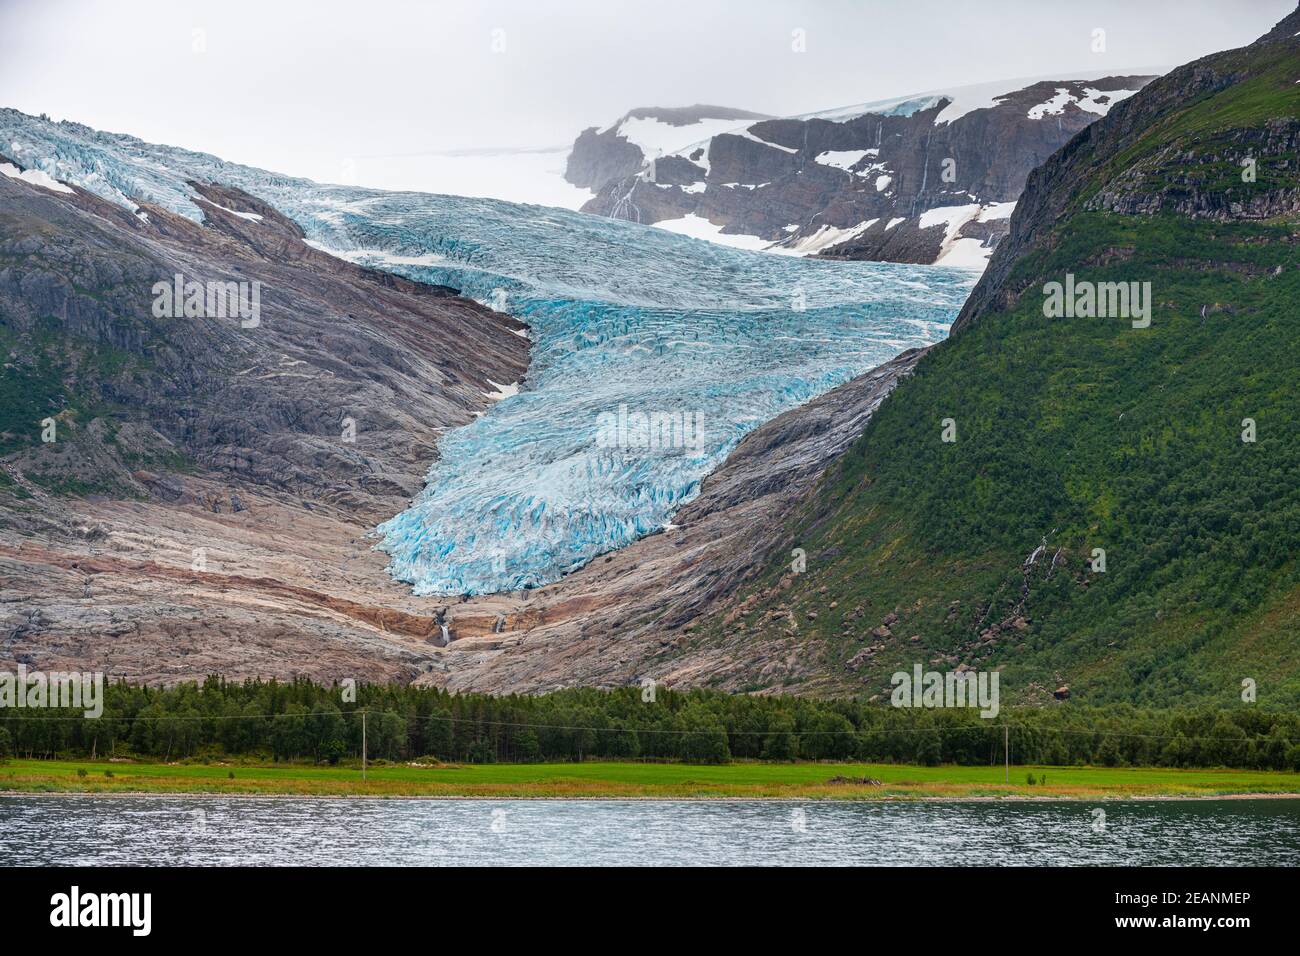 Glacier Svartisen, route côtière de Kystriksveien, Norvège, Scandinavie, Europe Banque D'Images